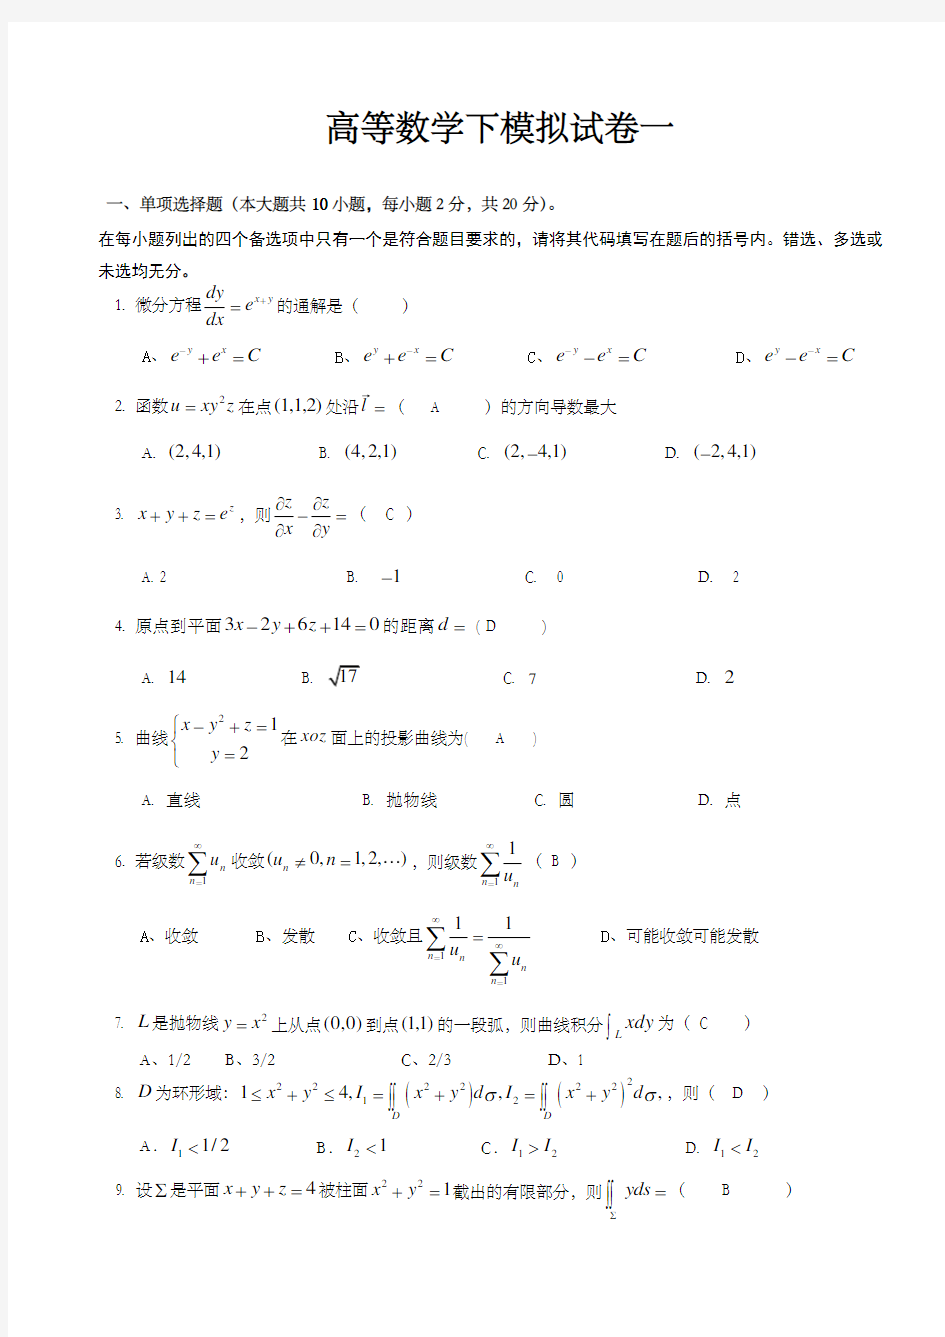 重庆理工大学高等数学下试卷一答案已附后